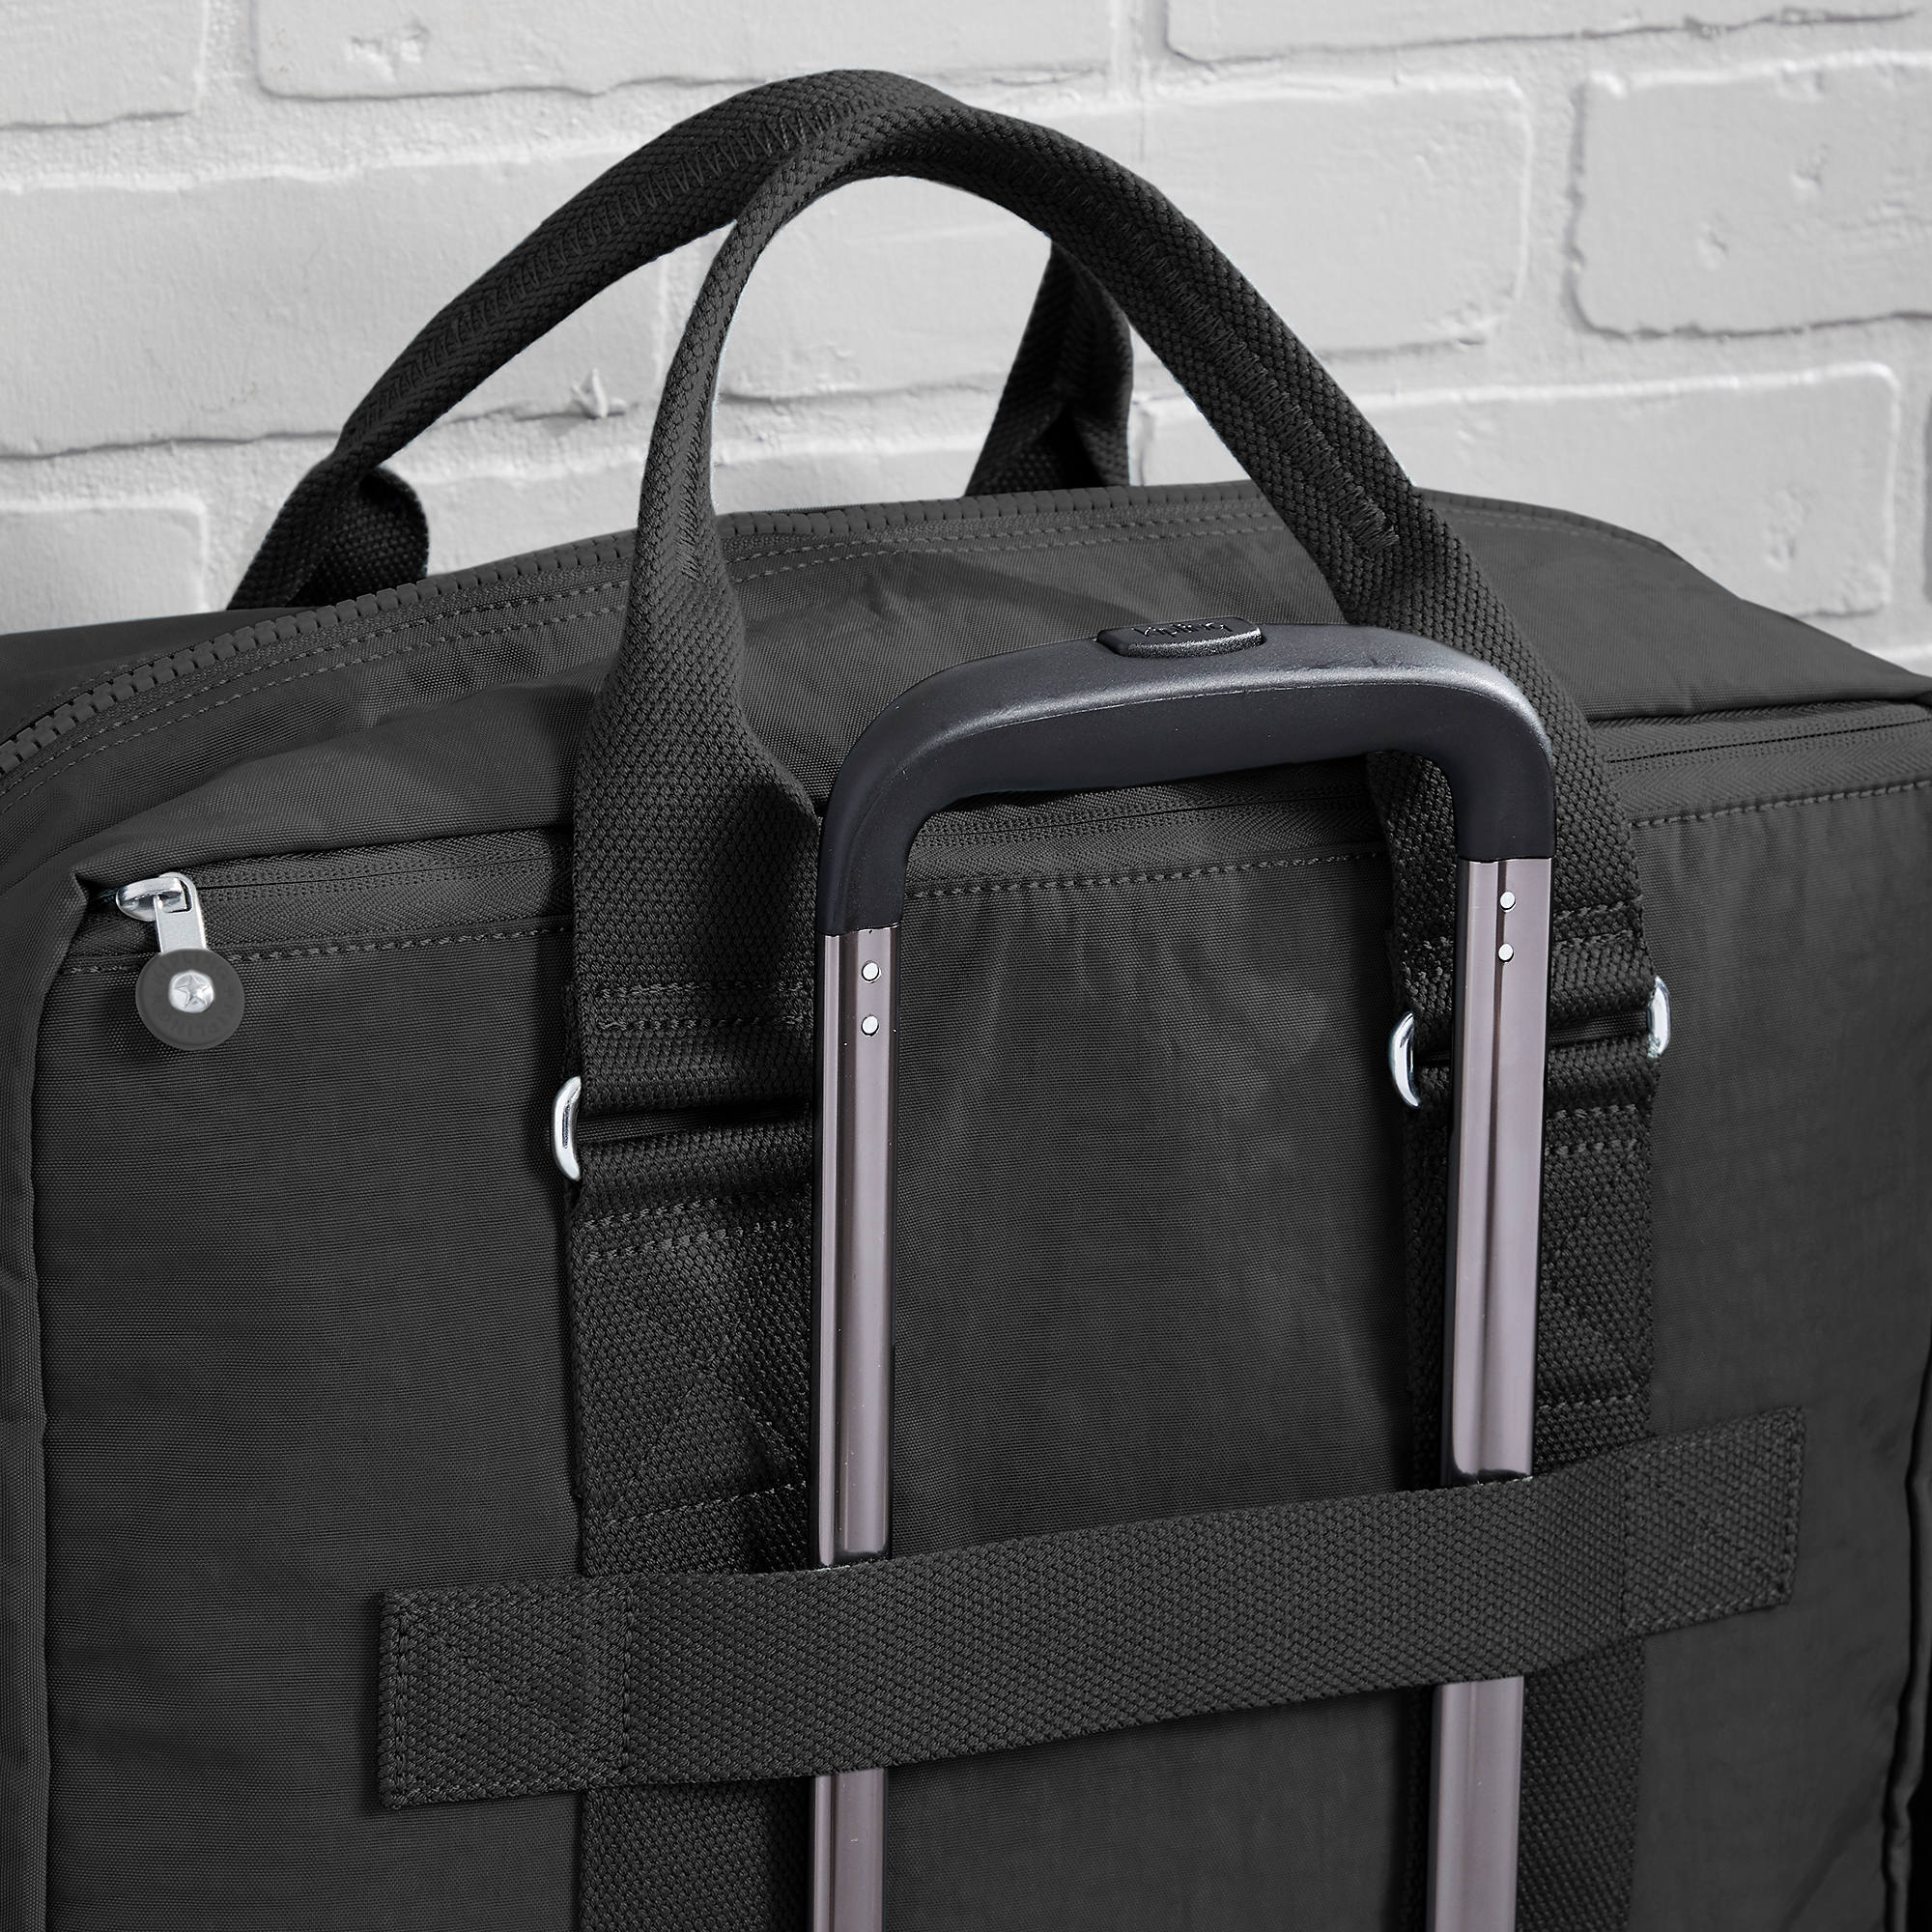 Kipling Soy Travel Bag Black Noir | eBay